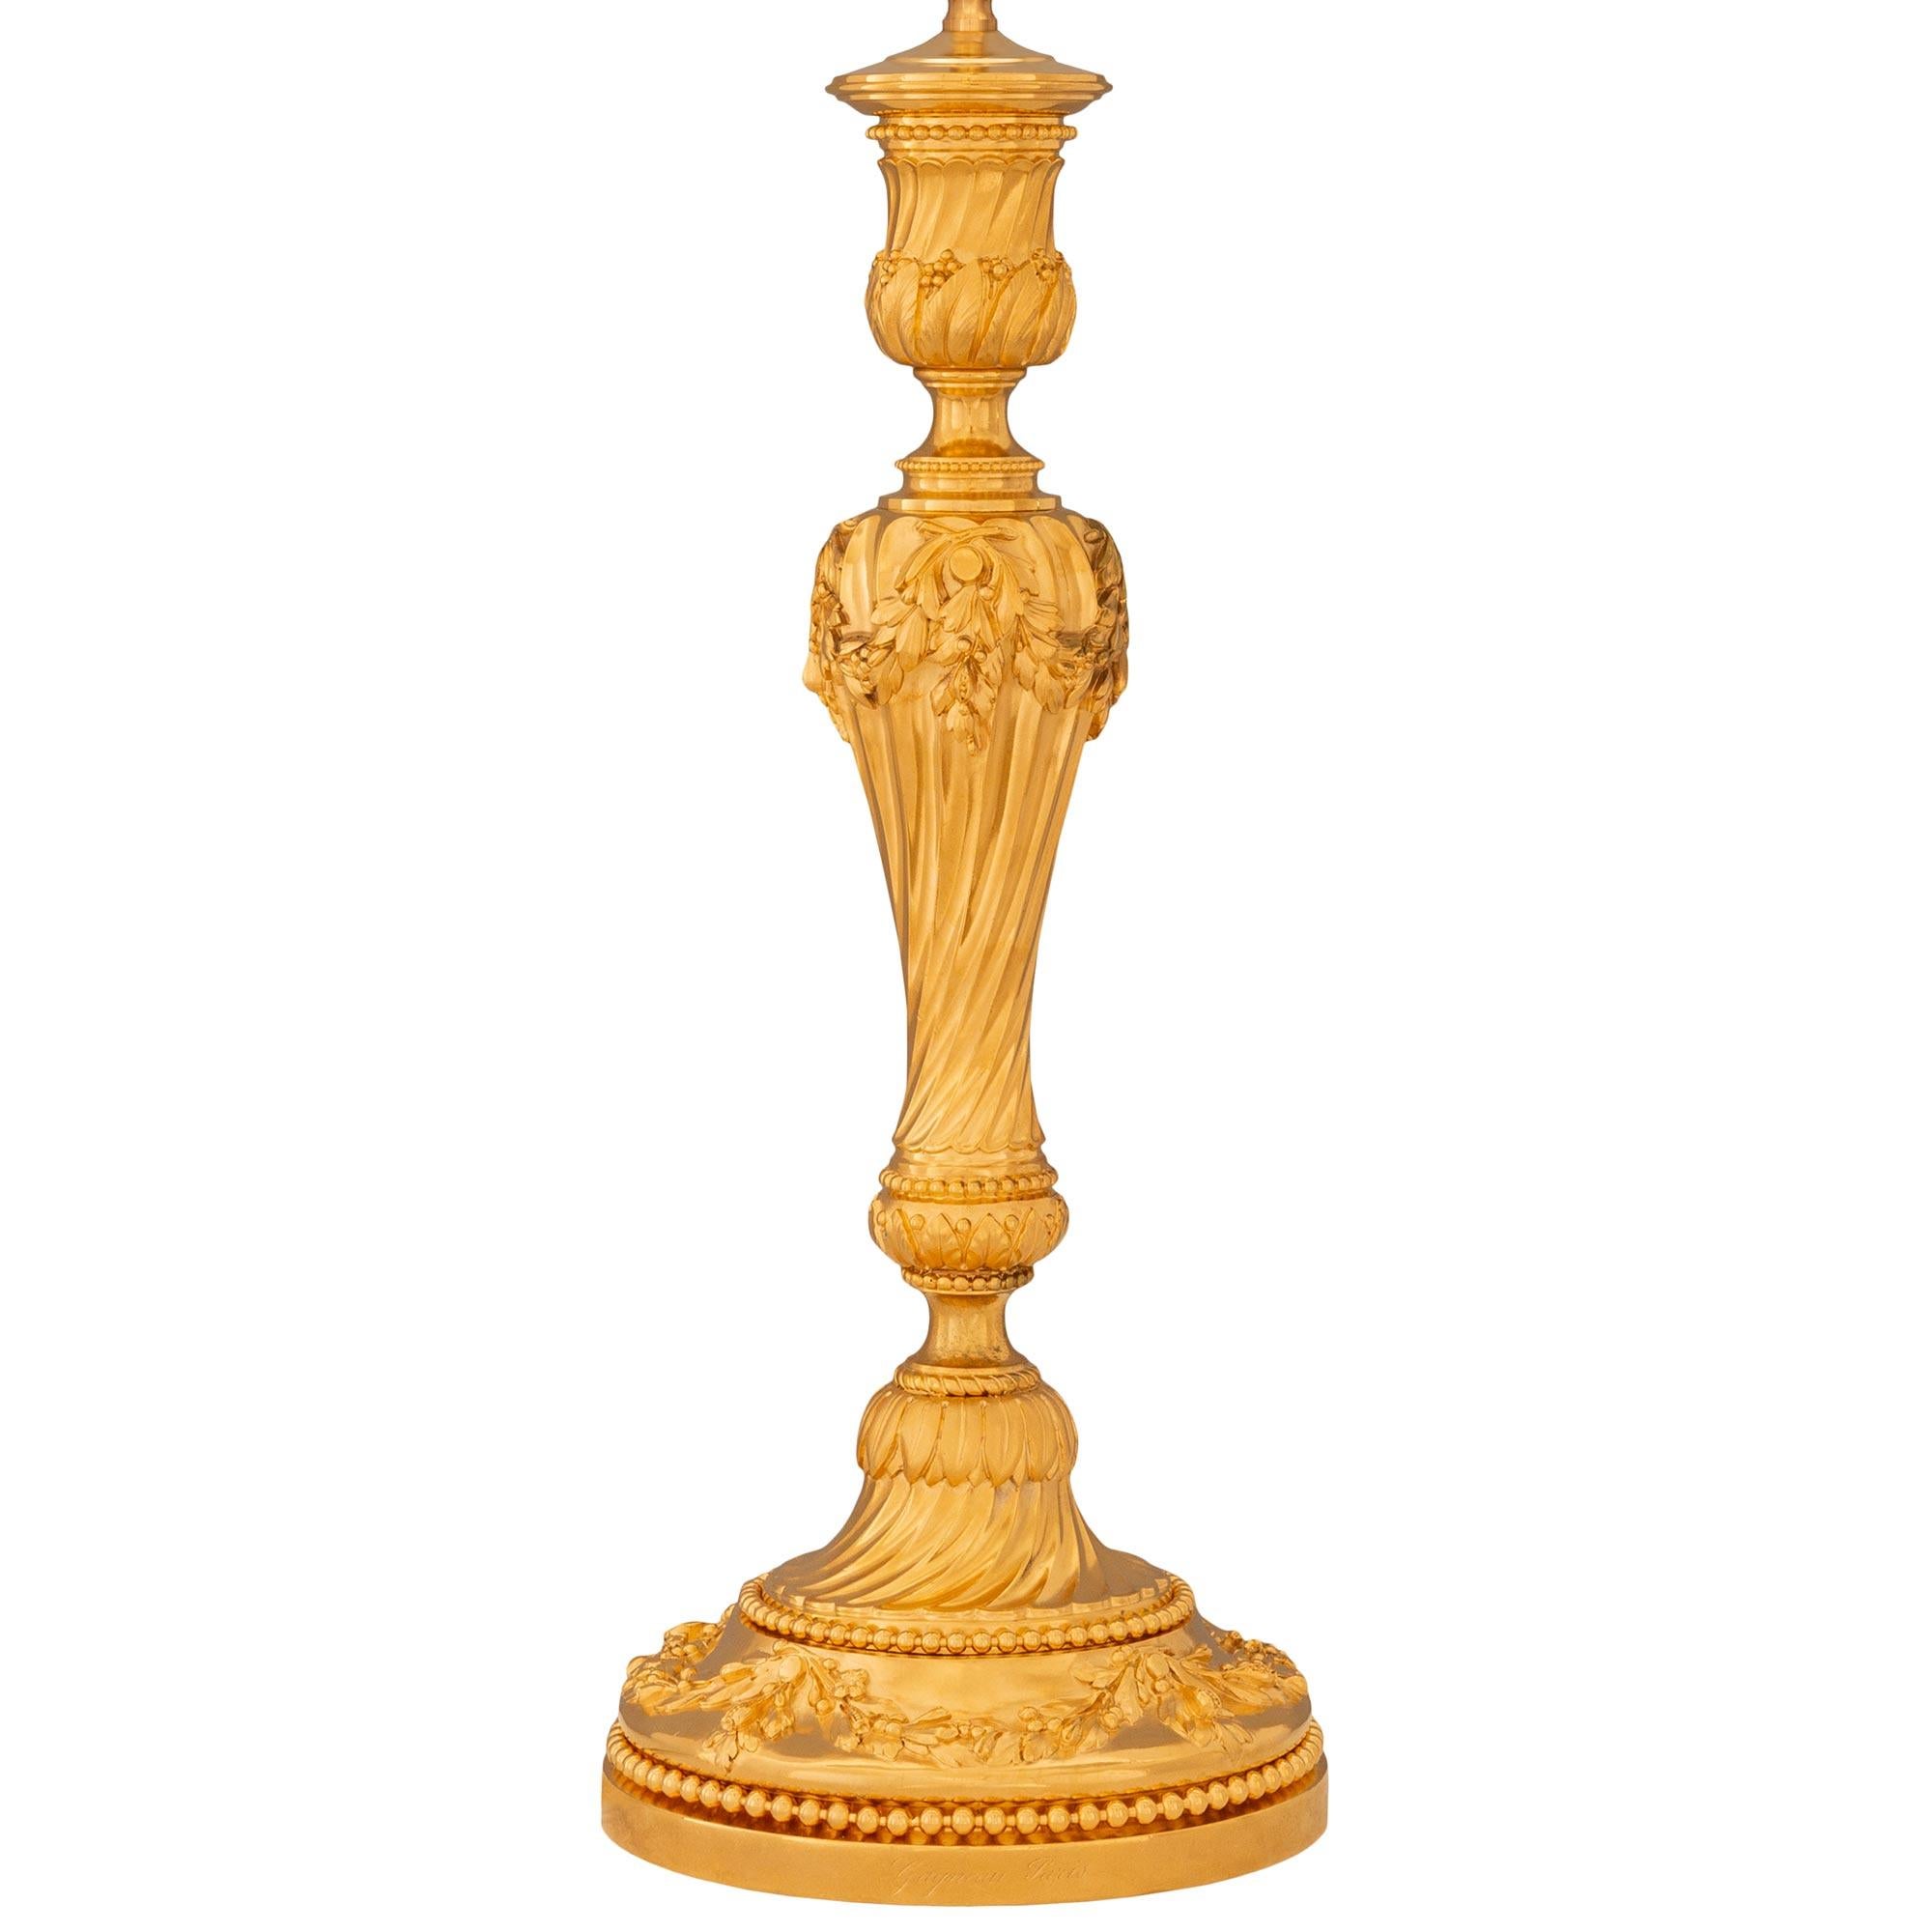 Une paire de lampes en bronze doré de style Louis XVI du XIXe siècle, signée Gagneau Paris. Chaque lampe est surmontée d'un piédestal circulaire avec un bord perlé. Au-dessus du piédestal se trouve le socle décoré de guirlandes de feuillage, d'un